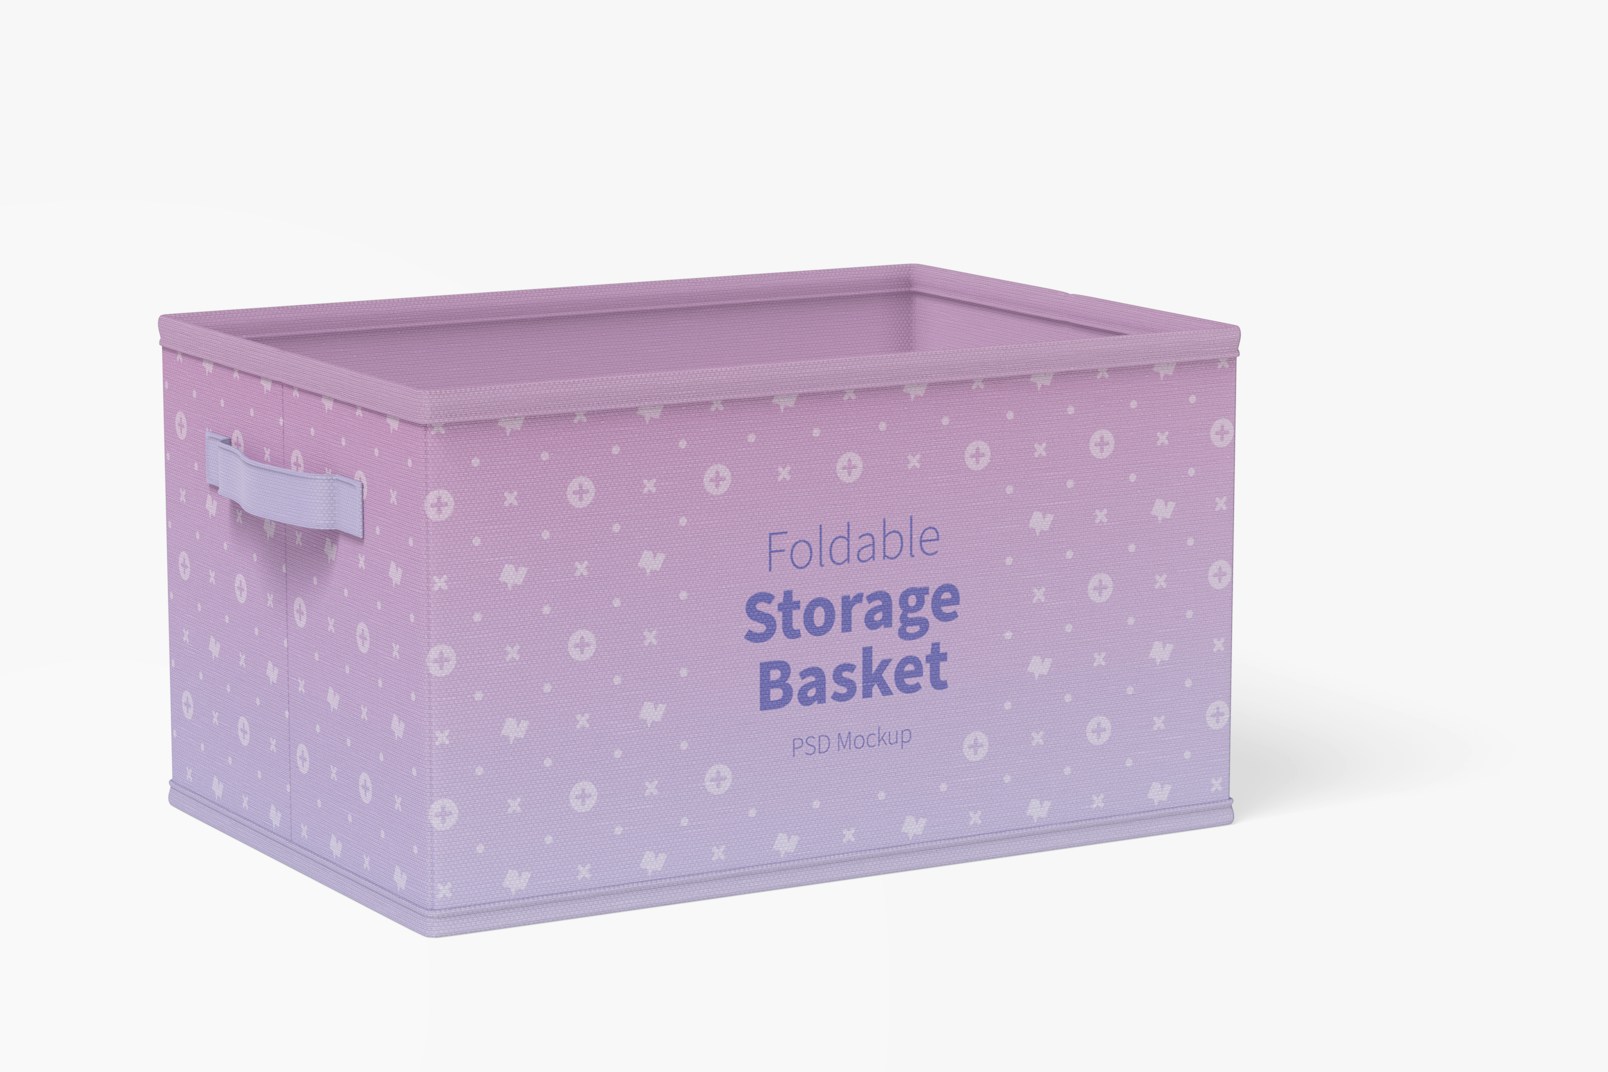 Foldable Storage Basket Mockup, Left View